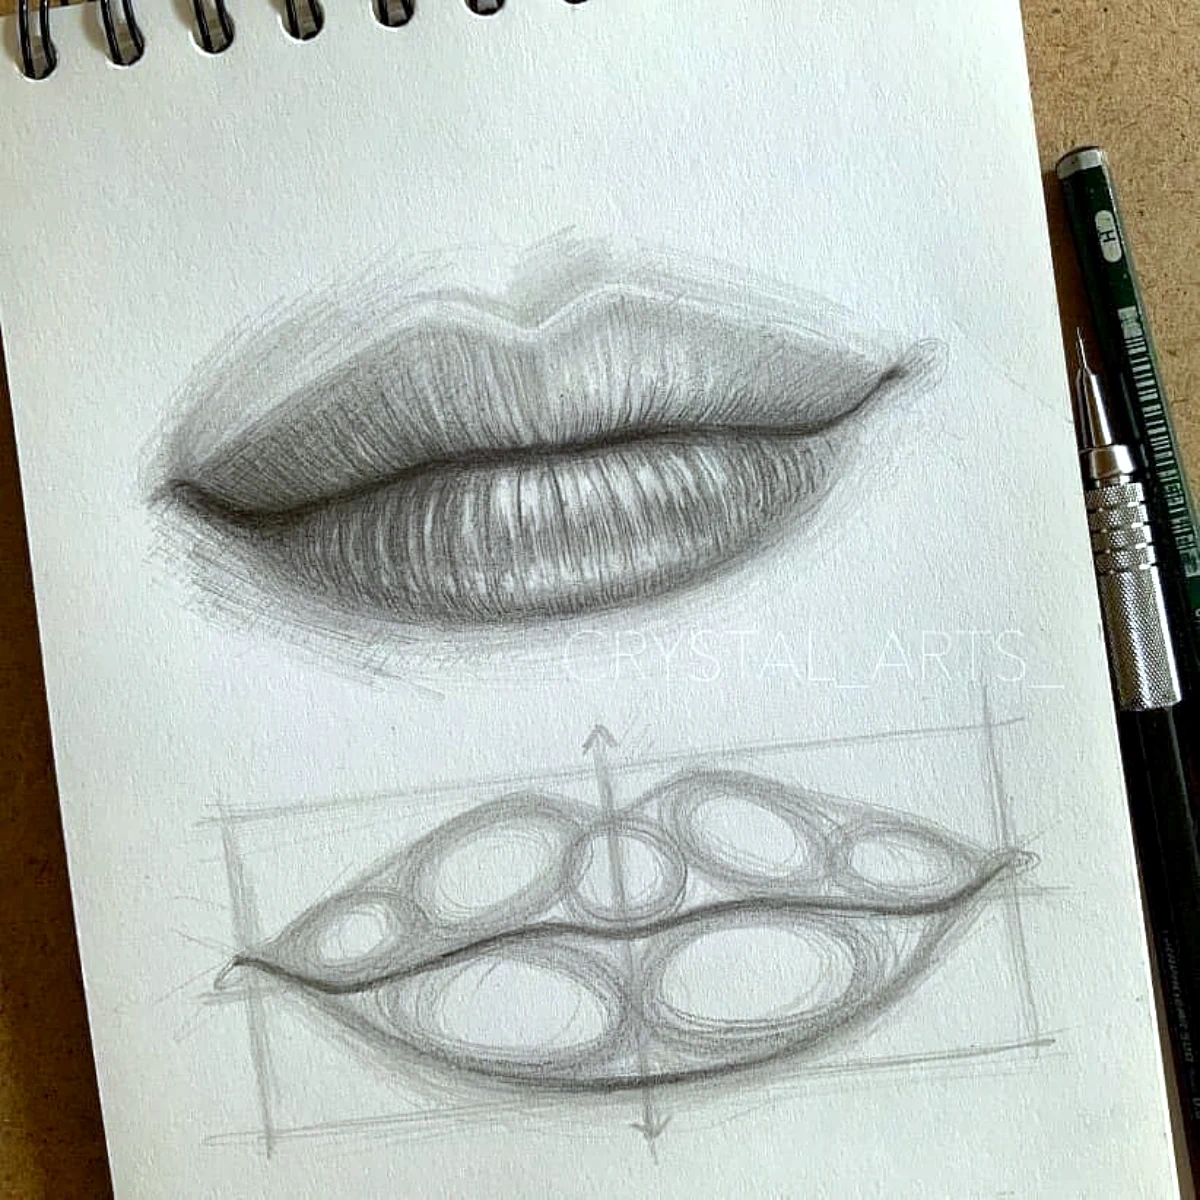 dessin d une bouche avec des crayons noirs